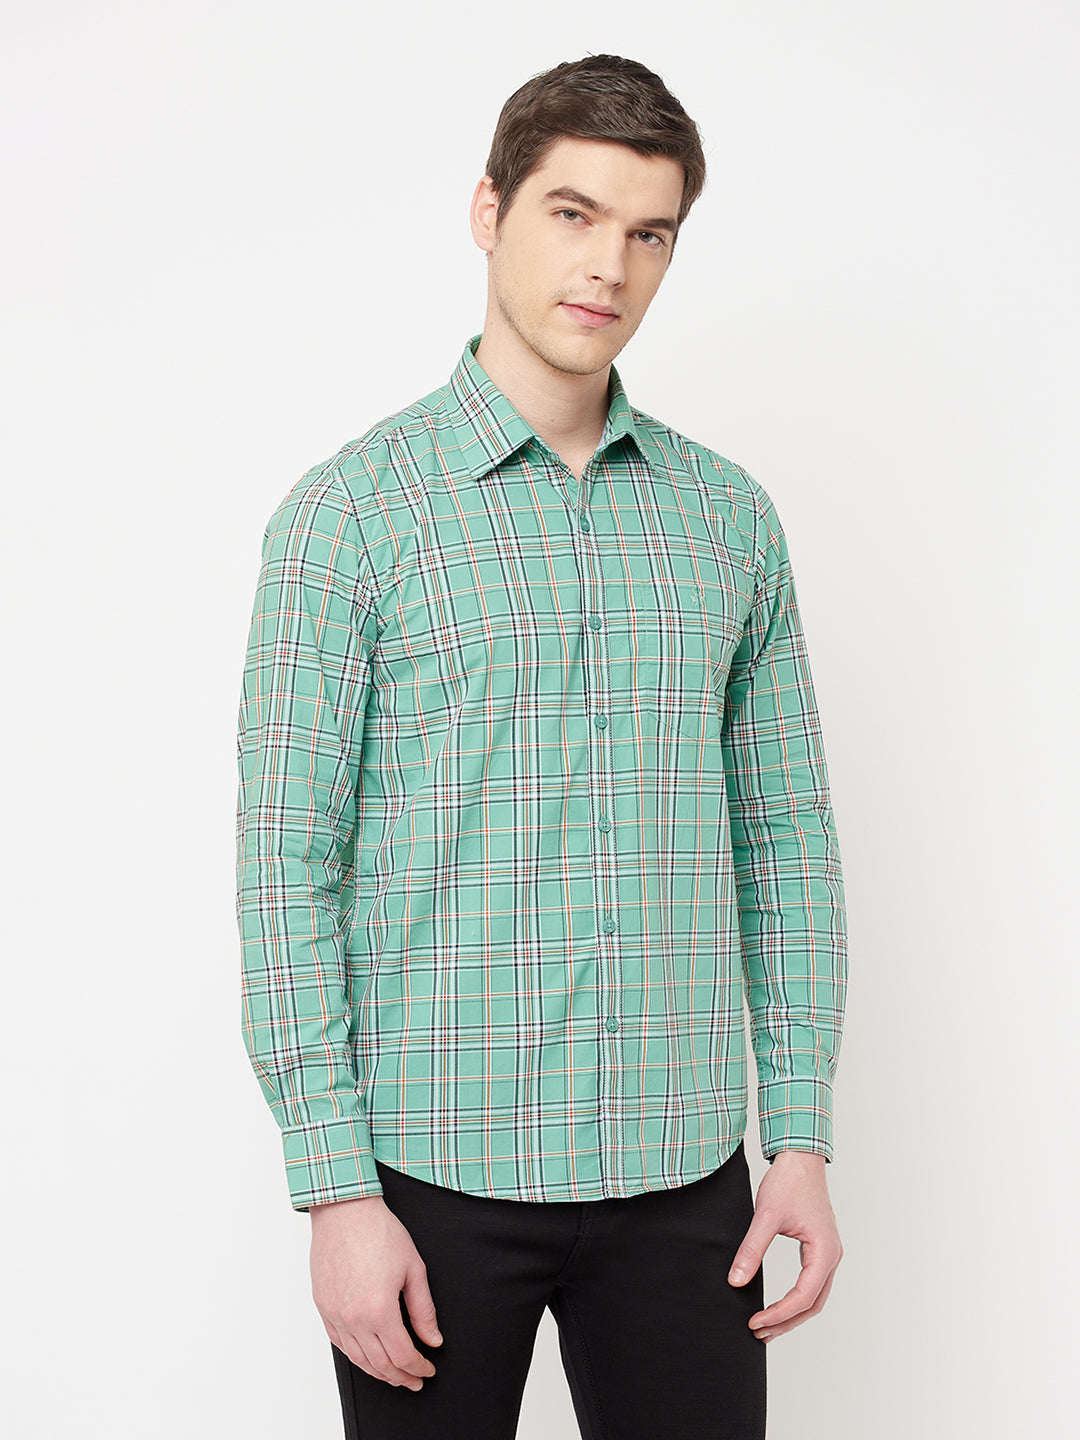 Green Checked Casual Shirt - Men Shirts